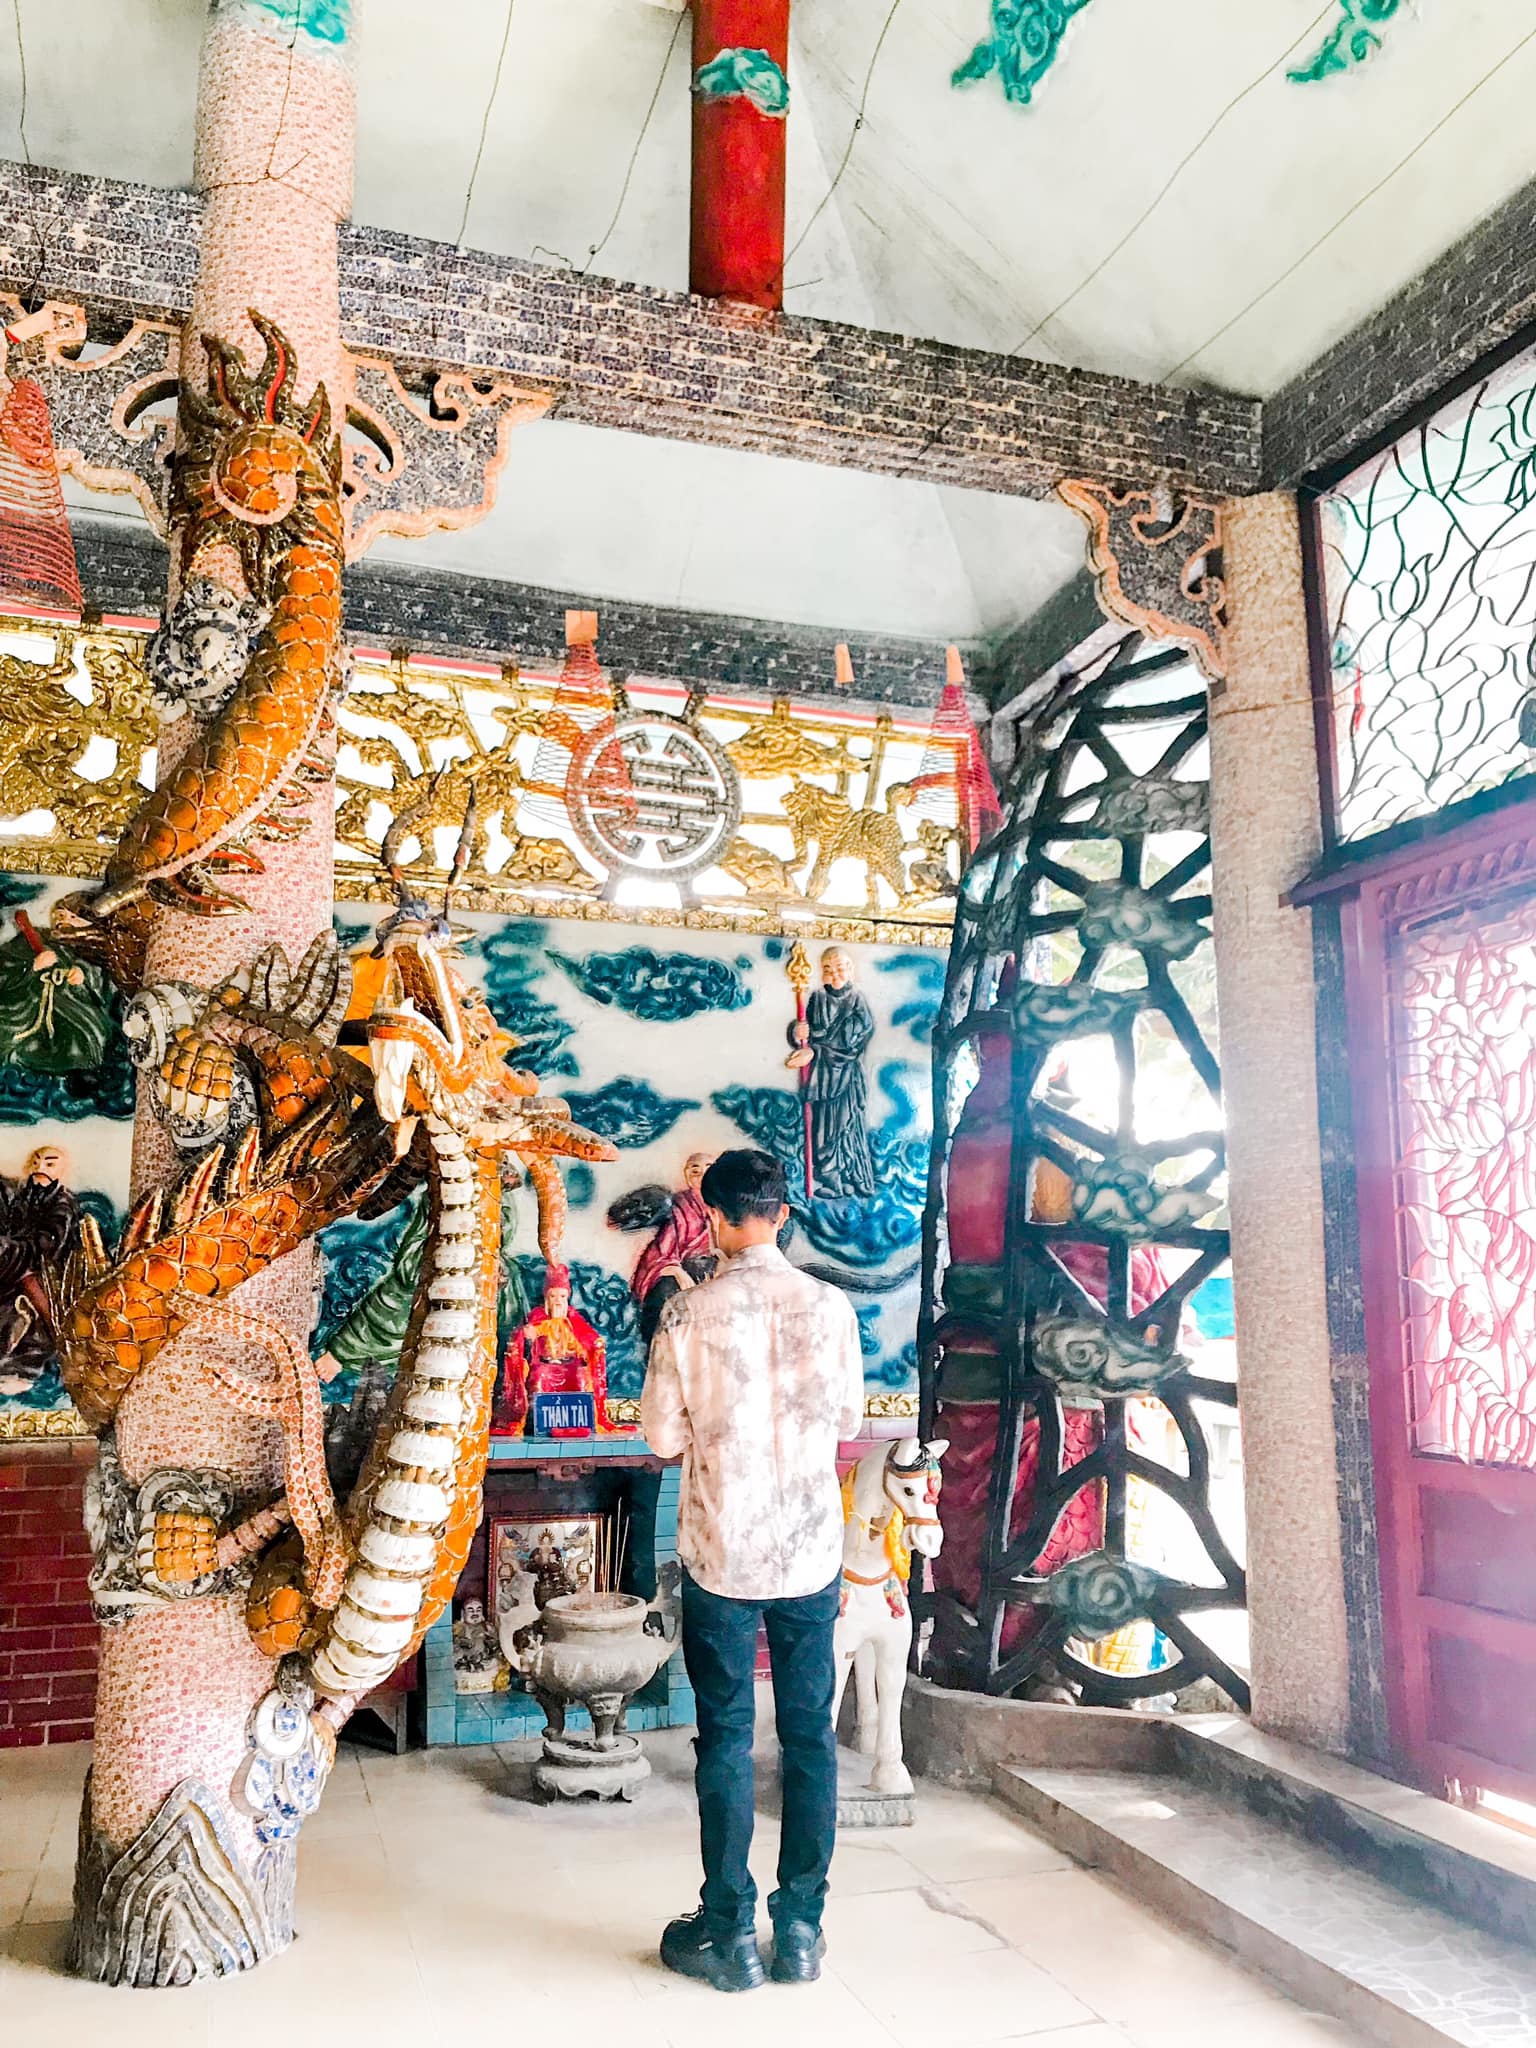 Ngôi miếu 300 năm 'lênh đênh' giữa sông Sài Gòn, khách xếp hàng chờ đò đi tìm lịch sử 'kì bí'